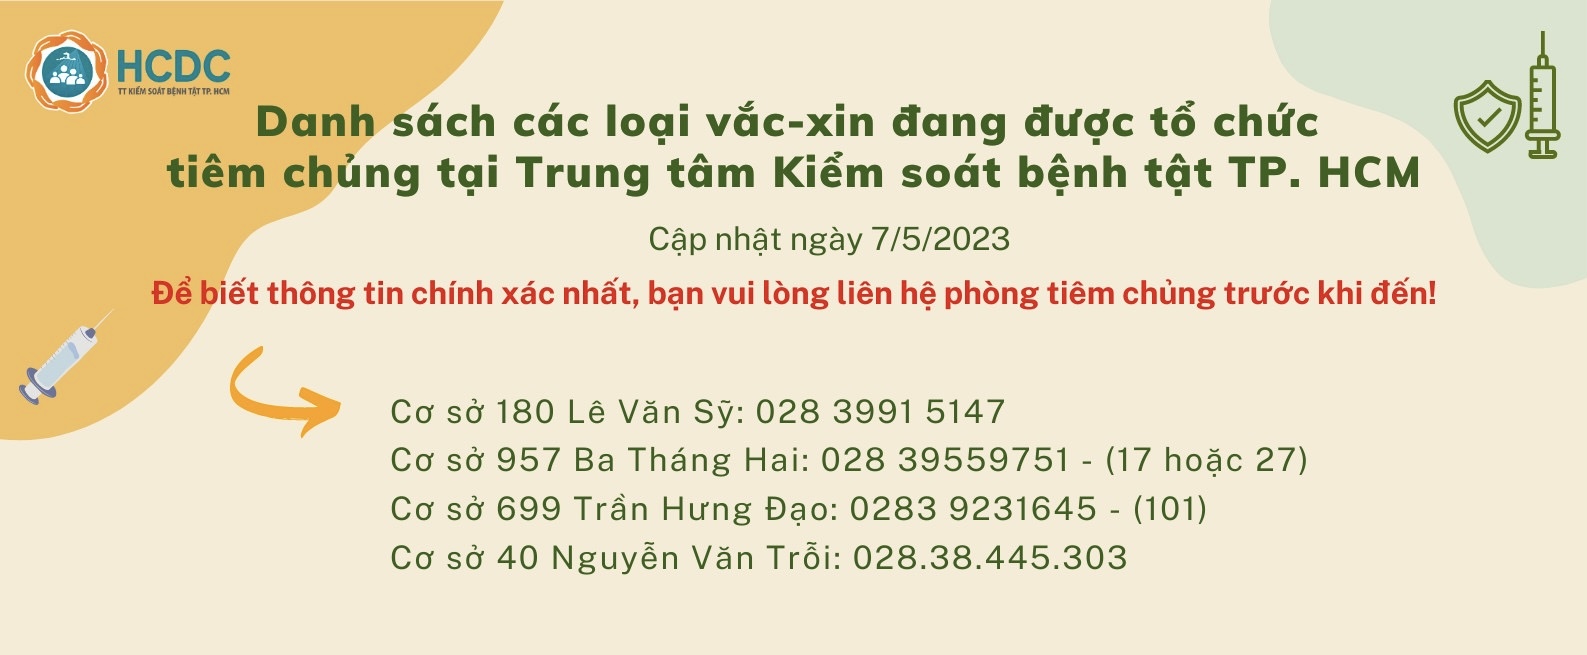 Danh sách các loại vắc-xin đang được tổ chức tiêm chủng tại Trung tâm Kiểm soát bệnh tật TP. Hồ Chí Minh (Ngày 7/5/2023)